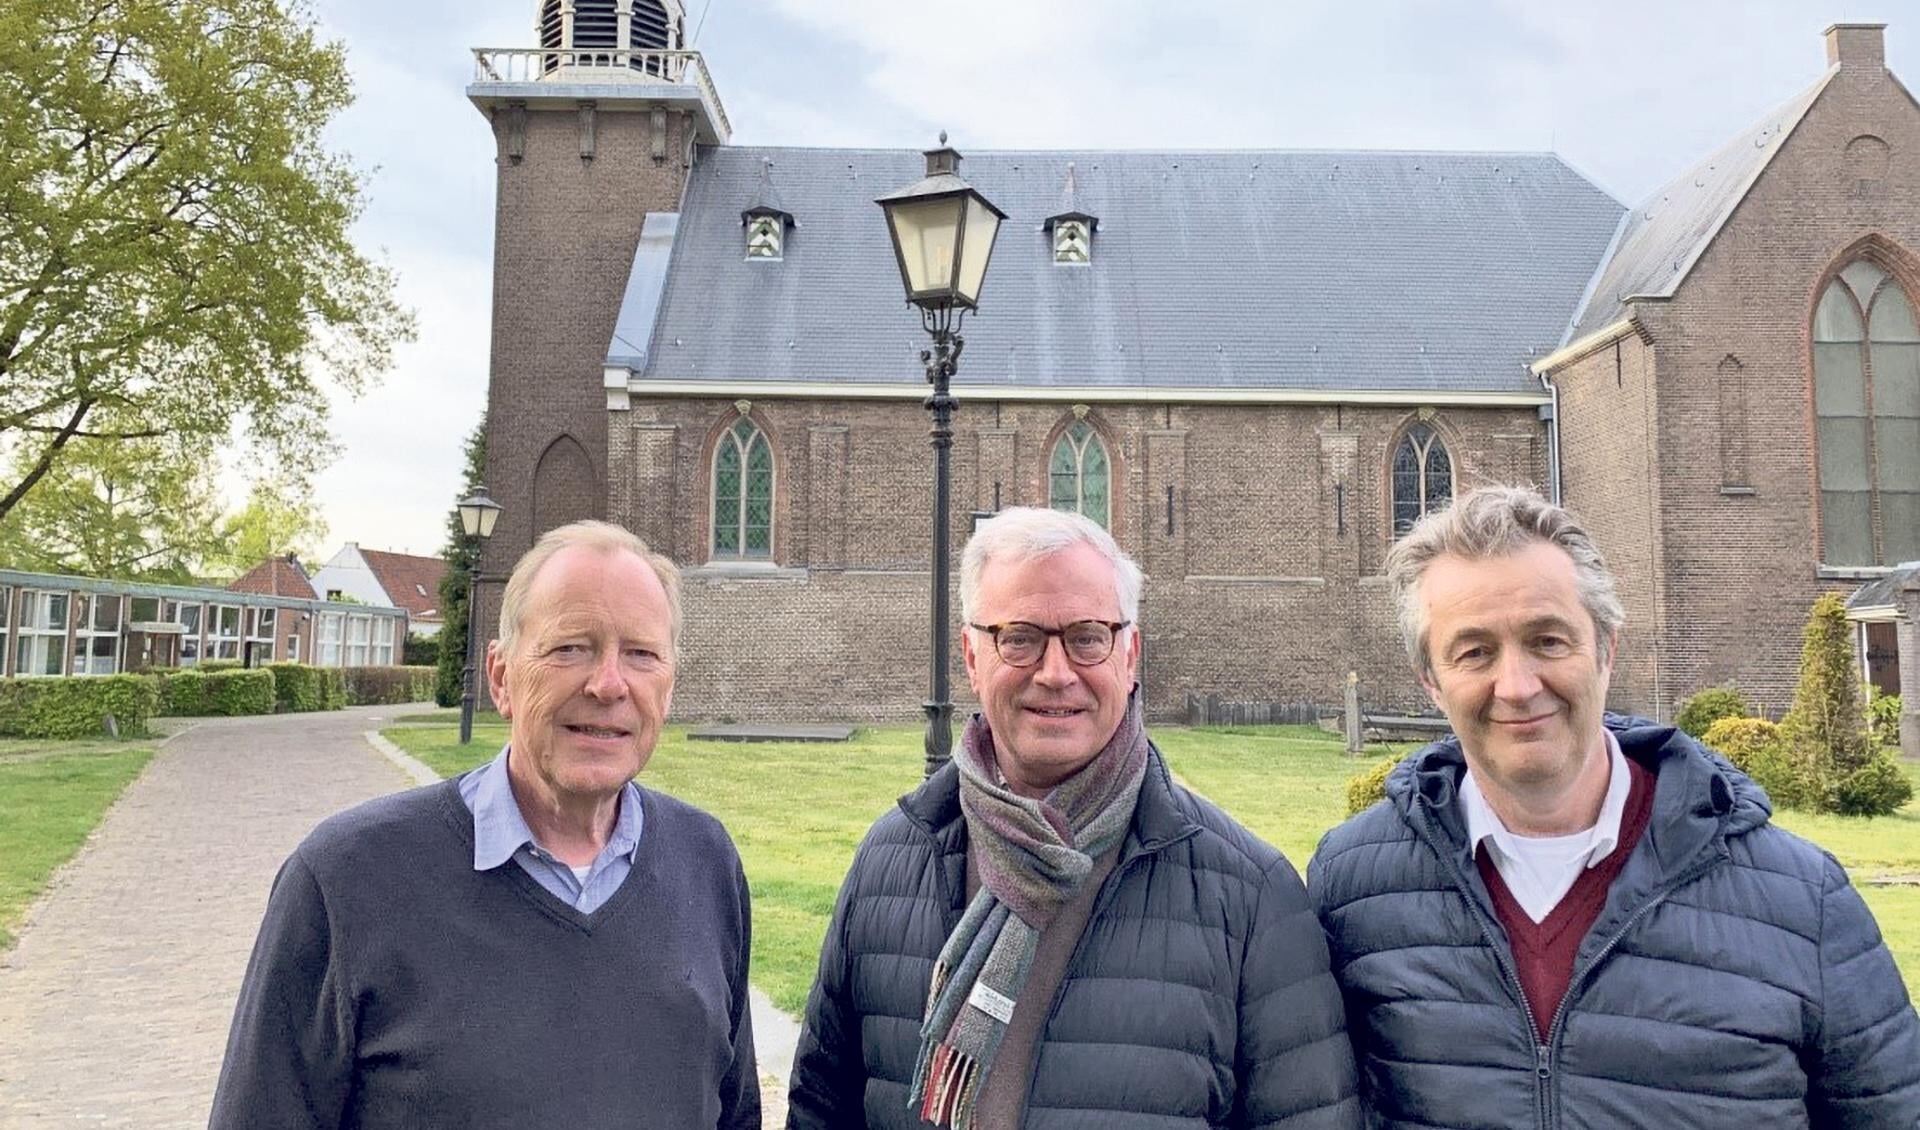 De organisatoren van Noot aan de Man voor de Dorpskerk in De Bilt v.l.n.r. Marco van Rijn, Hans Jans, Jan Vermeer.